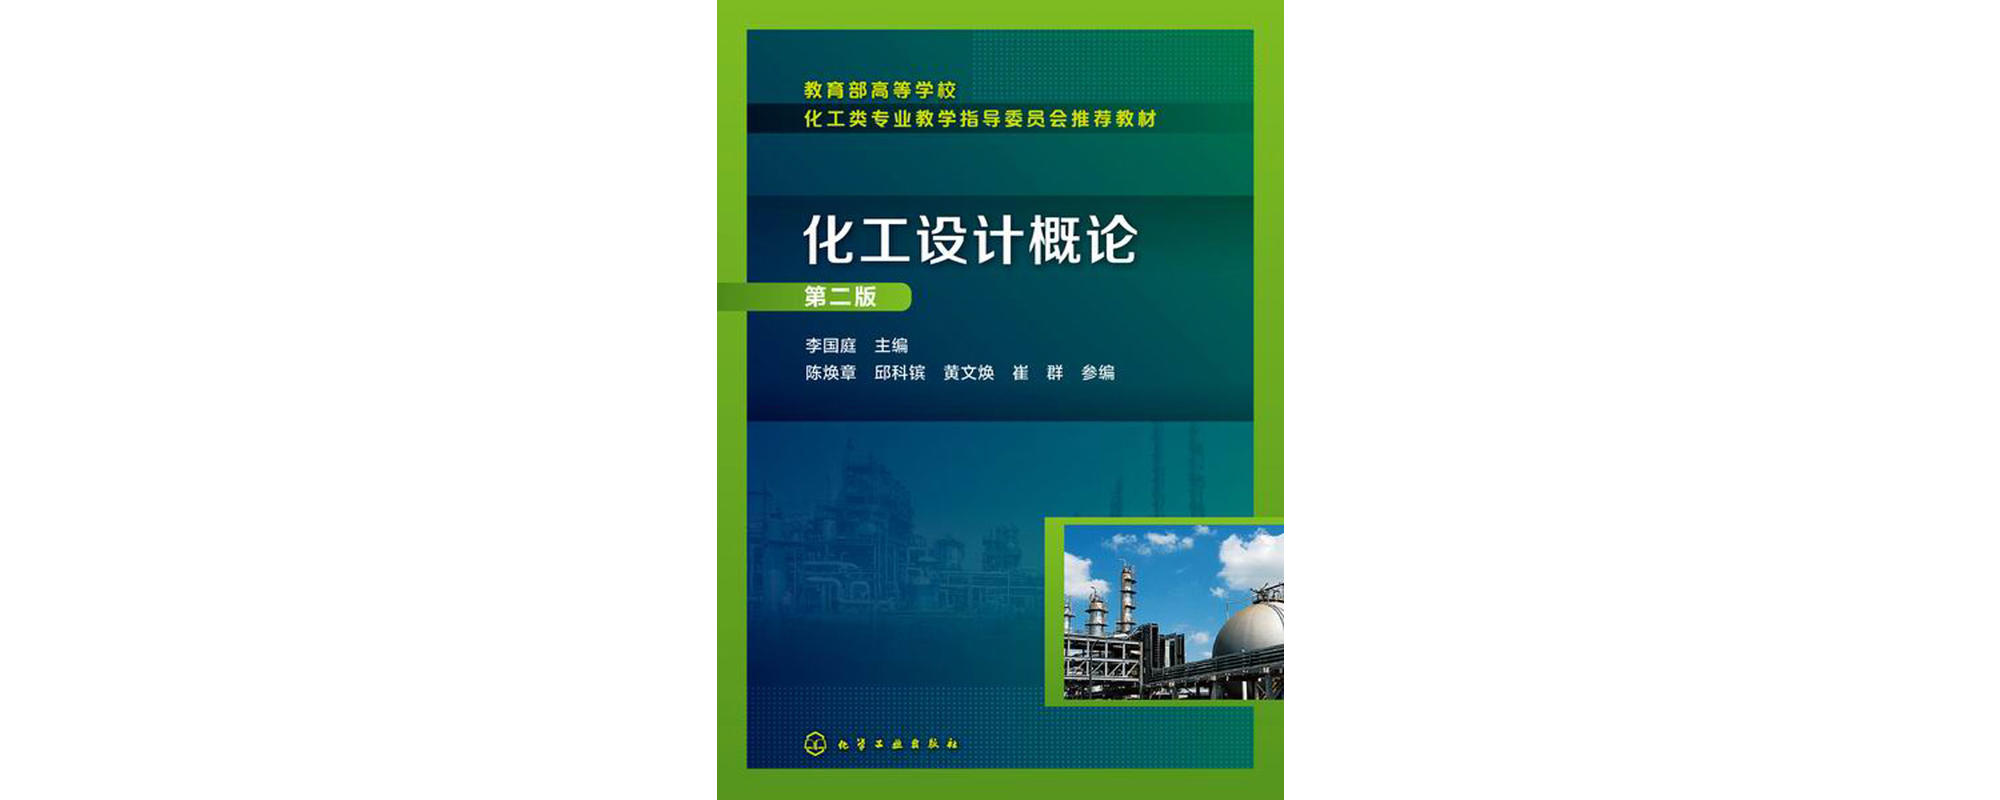 化工設計概論(化學工業出版社2008年出版圖書)